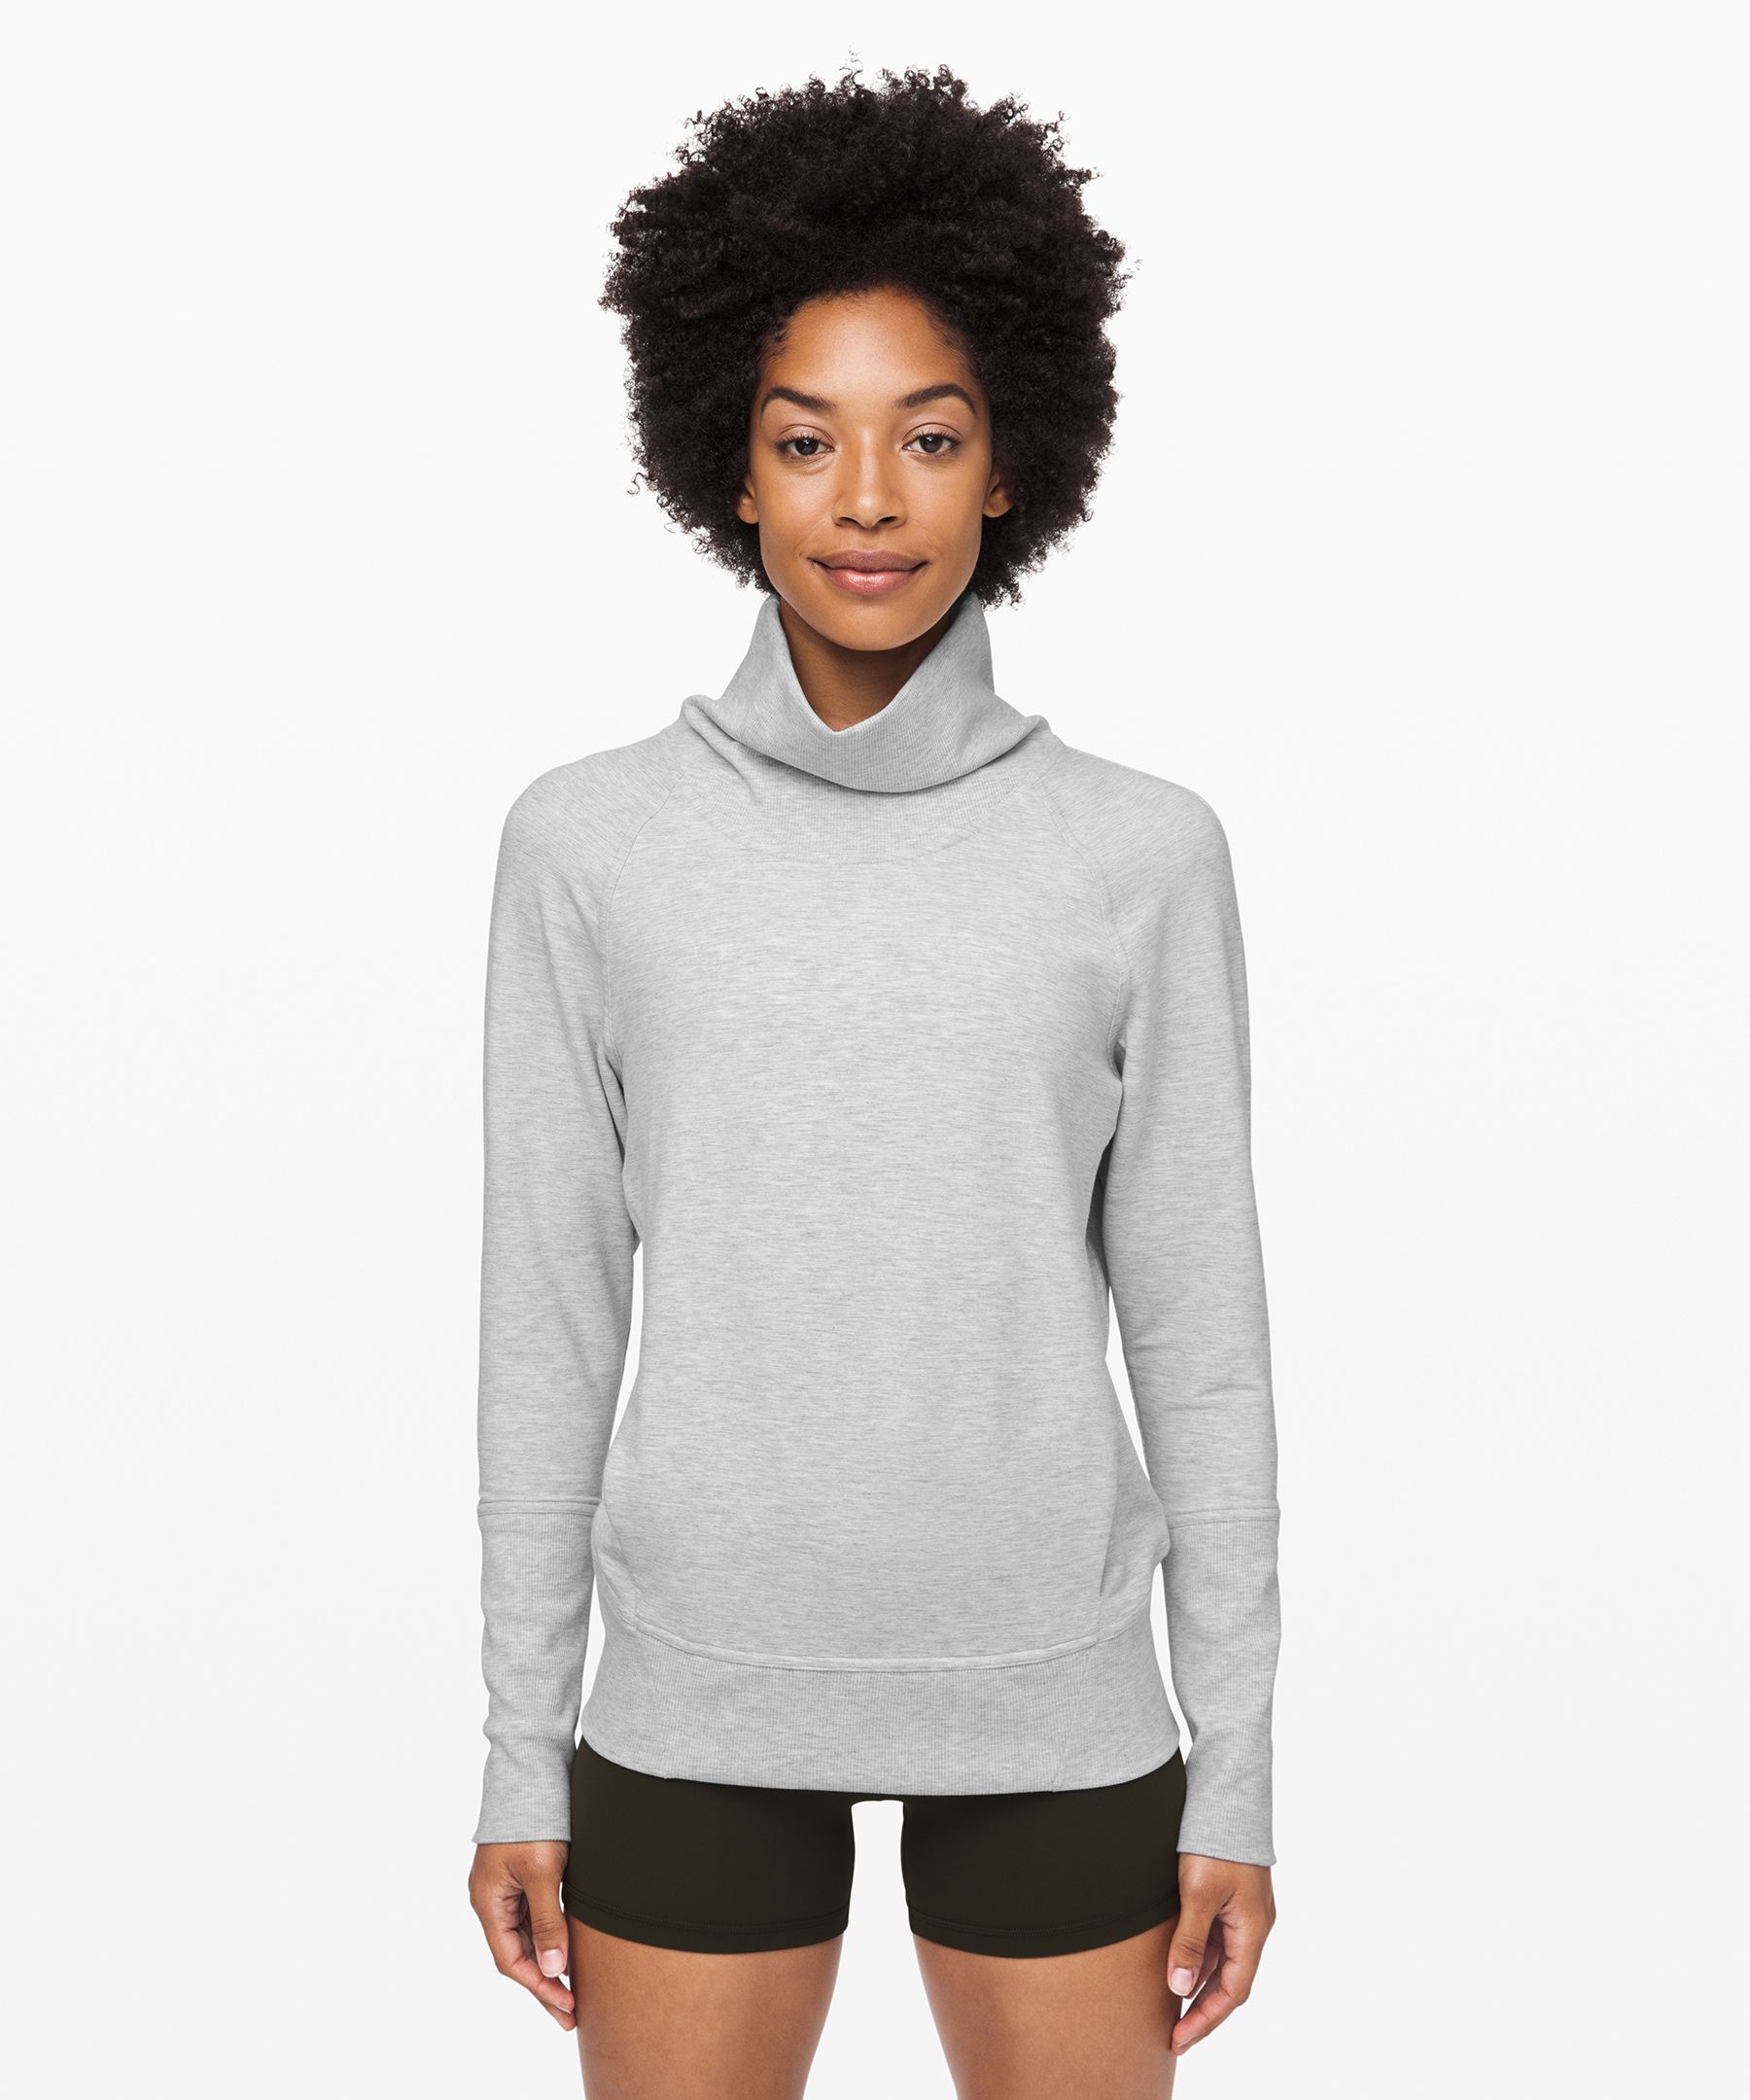 lululemon turtleneck sweatshirt